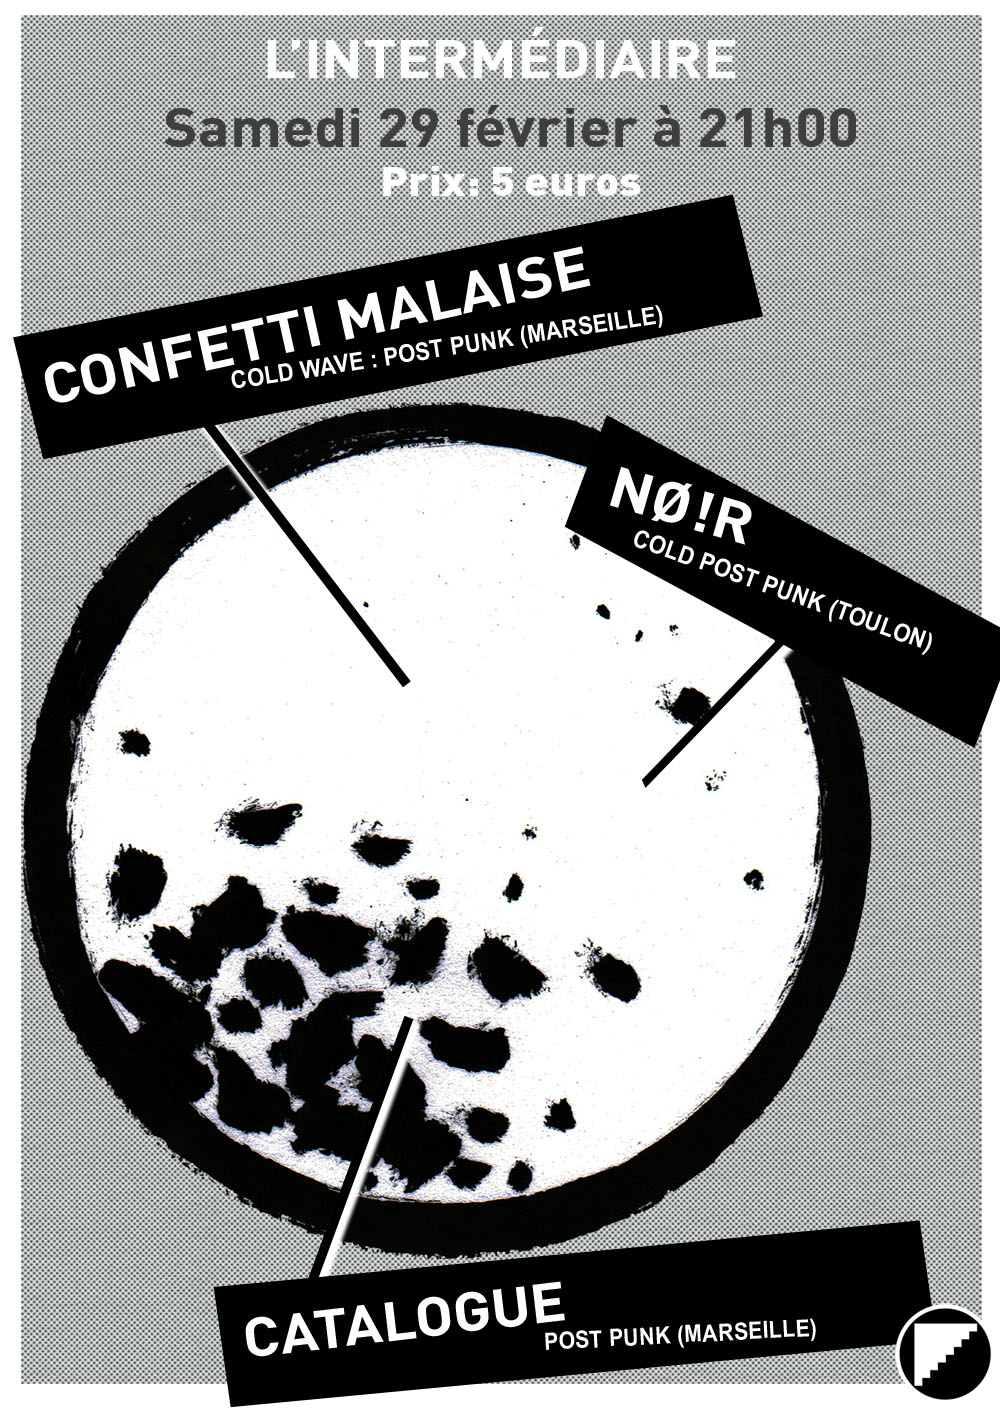 Catalogue + No !iR + Confetti Malaise